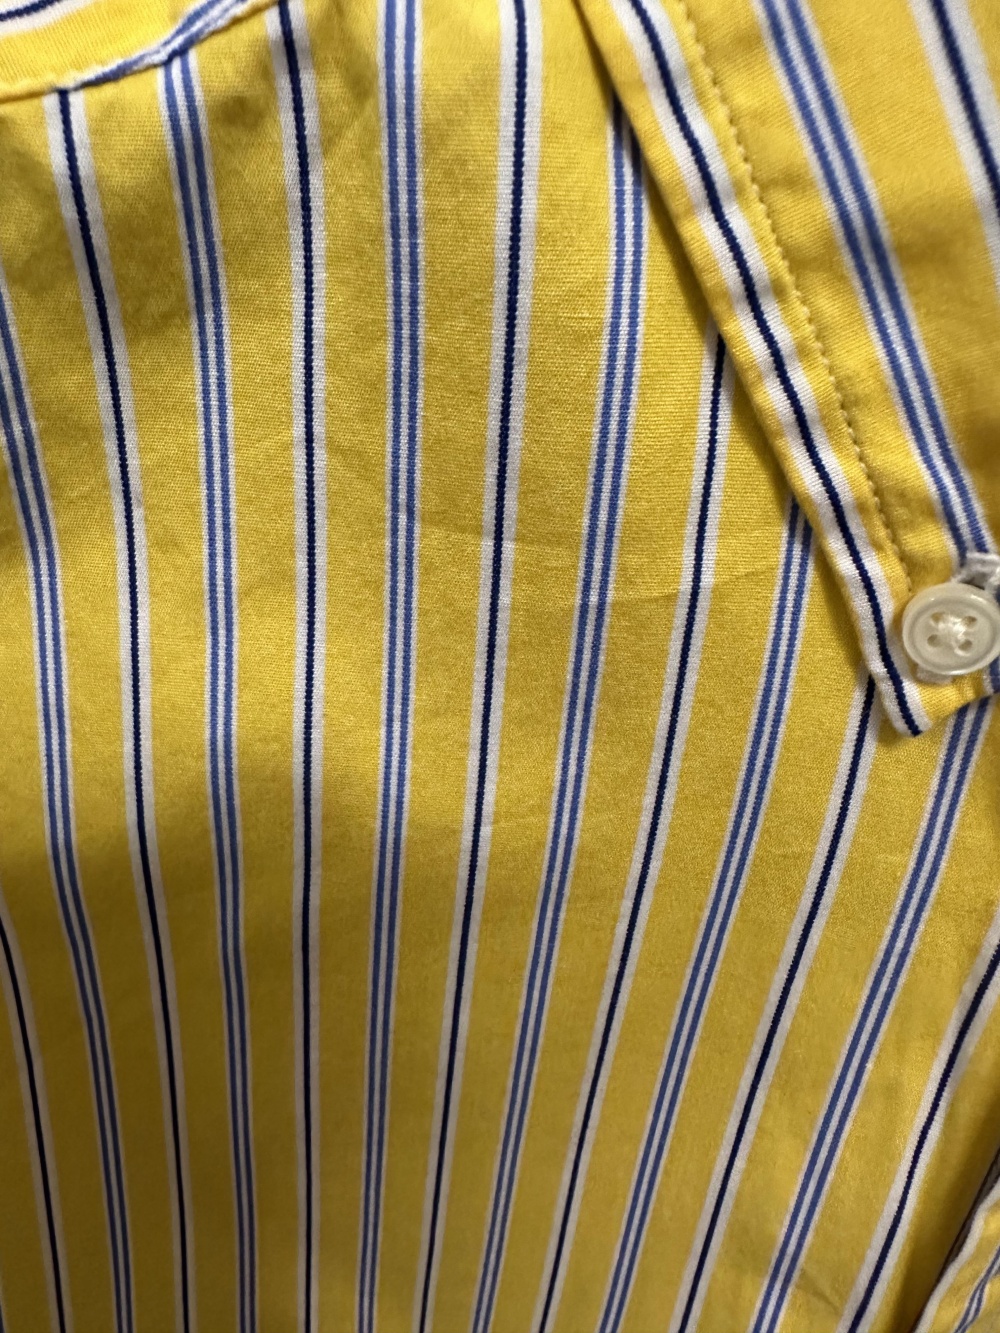 Рубашка Ralph Lauren, L 14-16